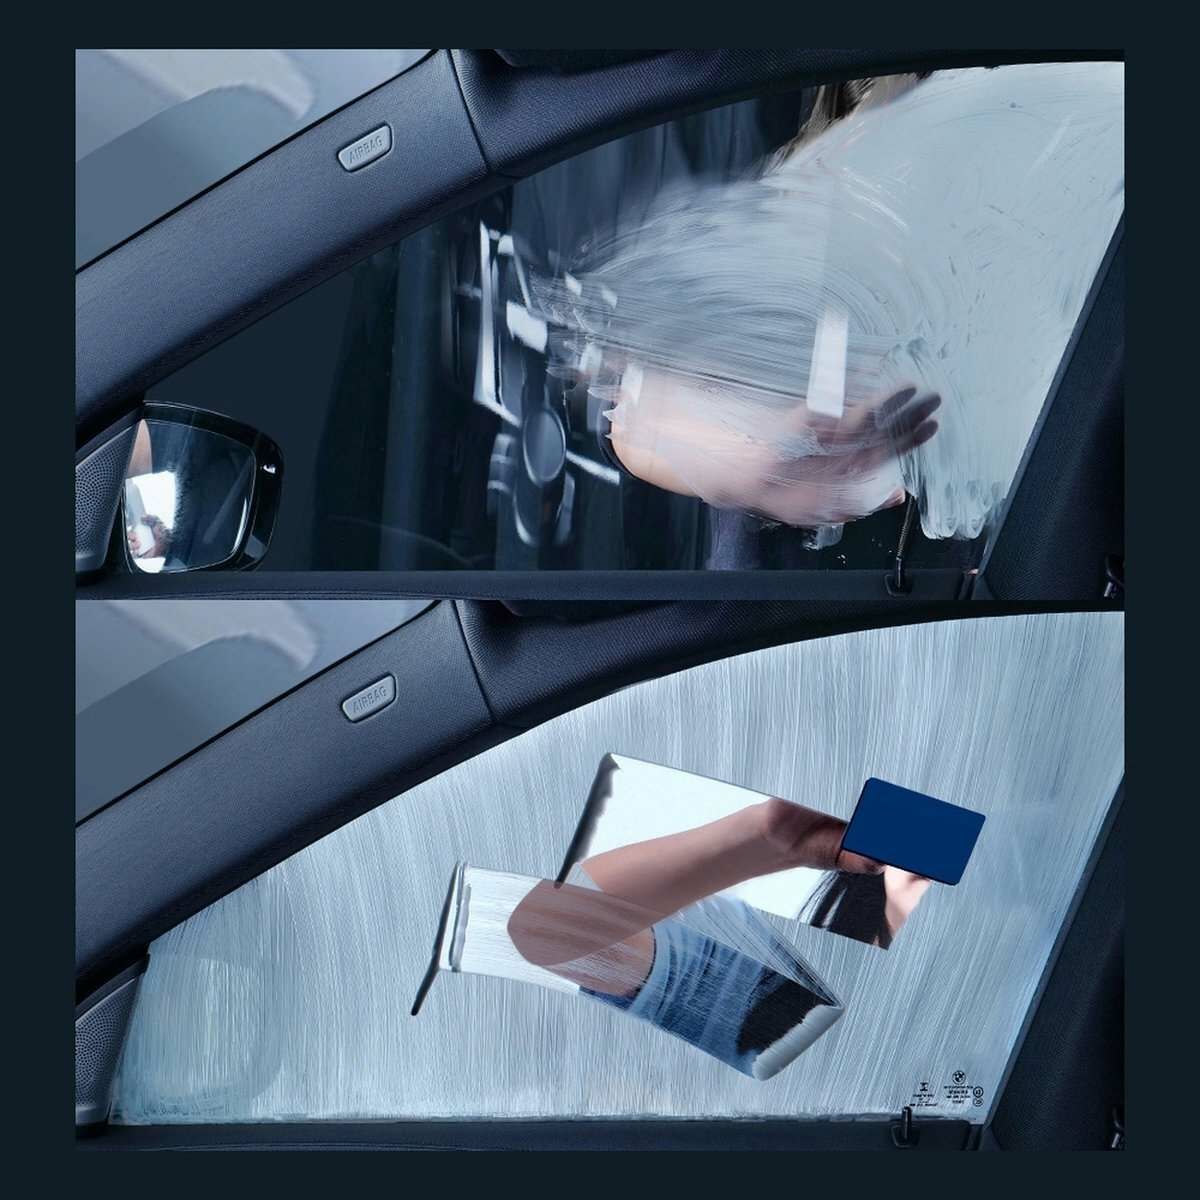 Kép 11/23 - Baseus autós kiegészítő, Auto-care ablak tisztító folyadék, zsíros foltok eltávolítására, 200ml, fehér (CRYH020002)